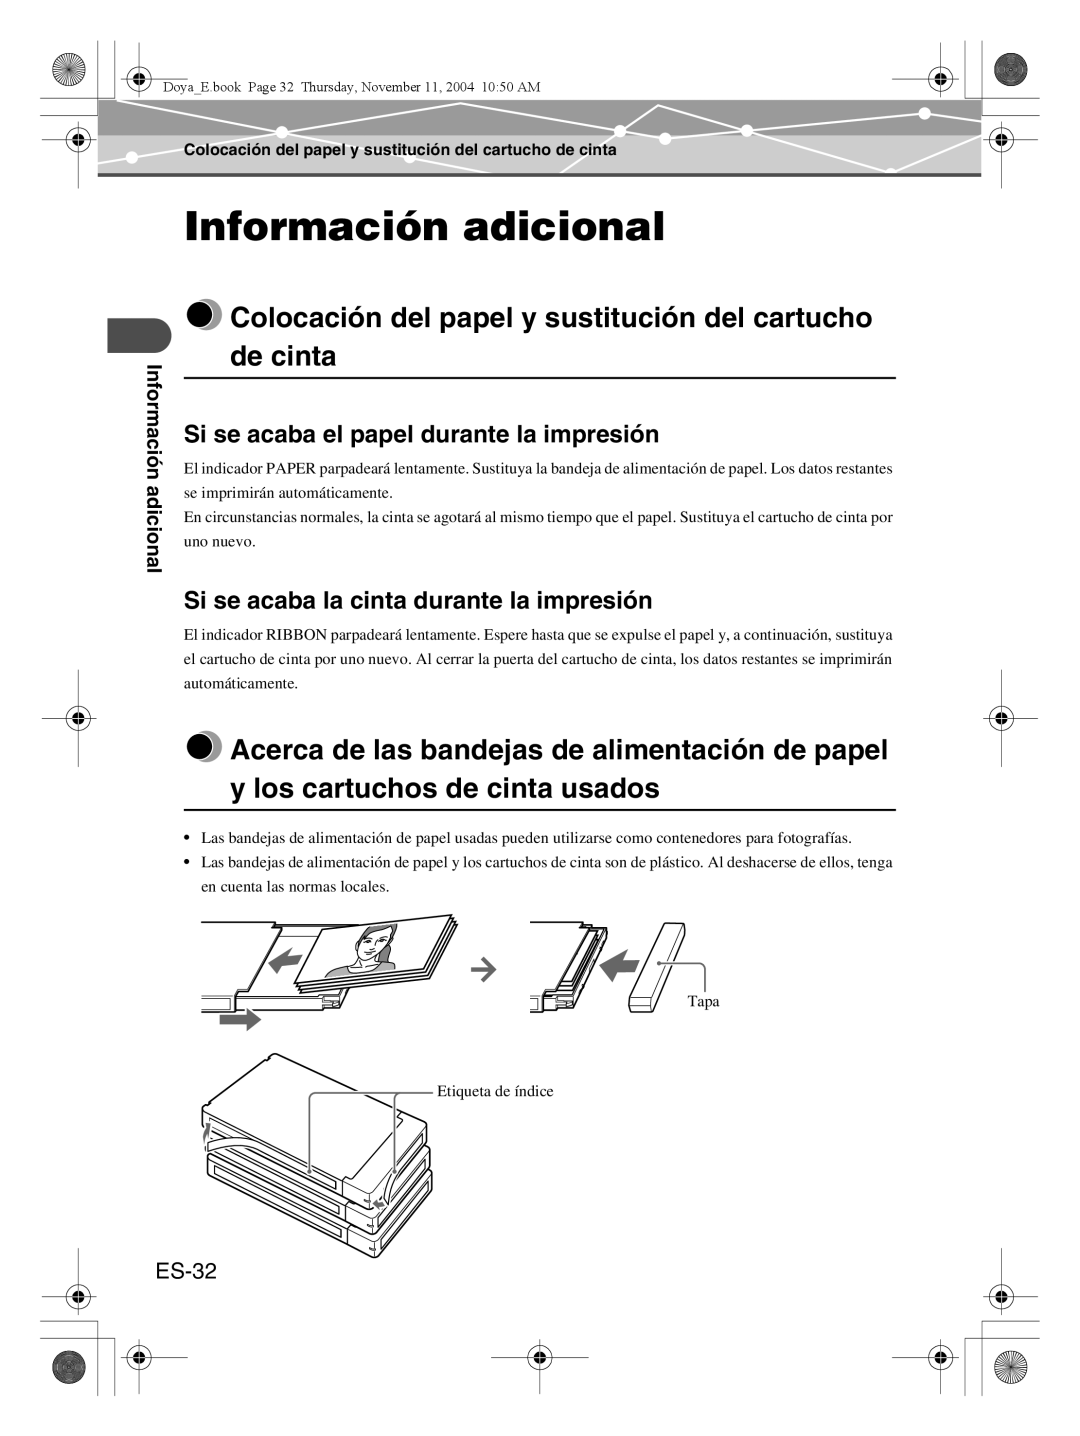 Olympus P-S100 user manual Información adicional, Colocación del papel y sustitución del cartucho de cinta, ES-32 